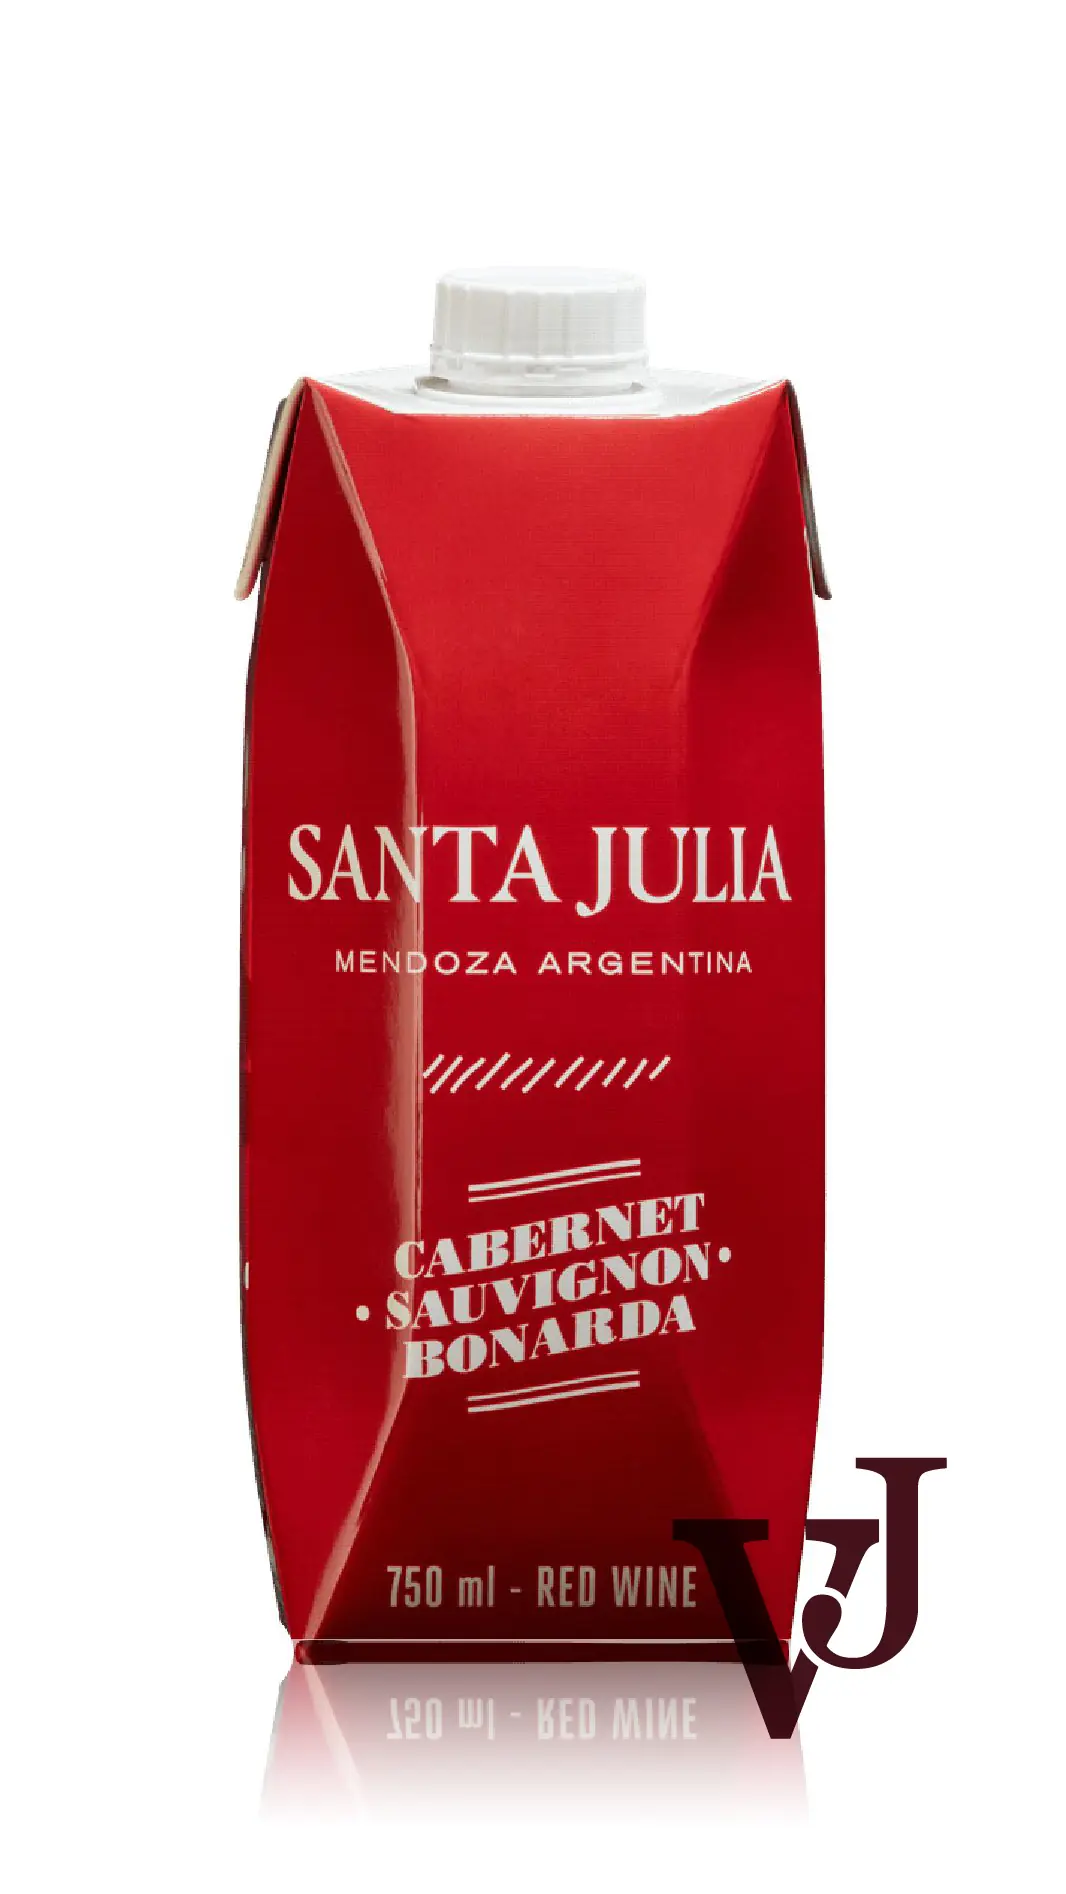 Rött Vin - Santa Julia Cabernet Sauvignon Bonarda artikel nummer 248601 från producenten Bodegas Santa Julia från området Argentina - Vinjournalen.se